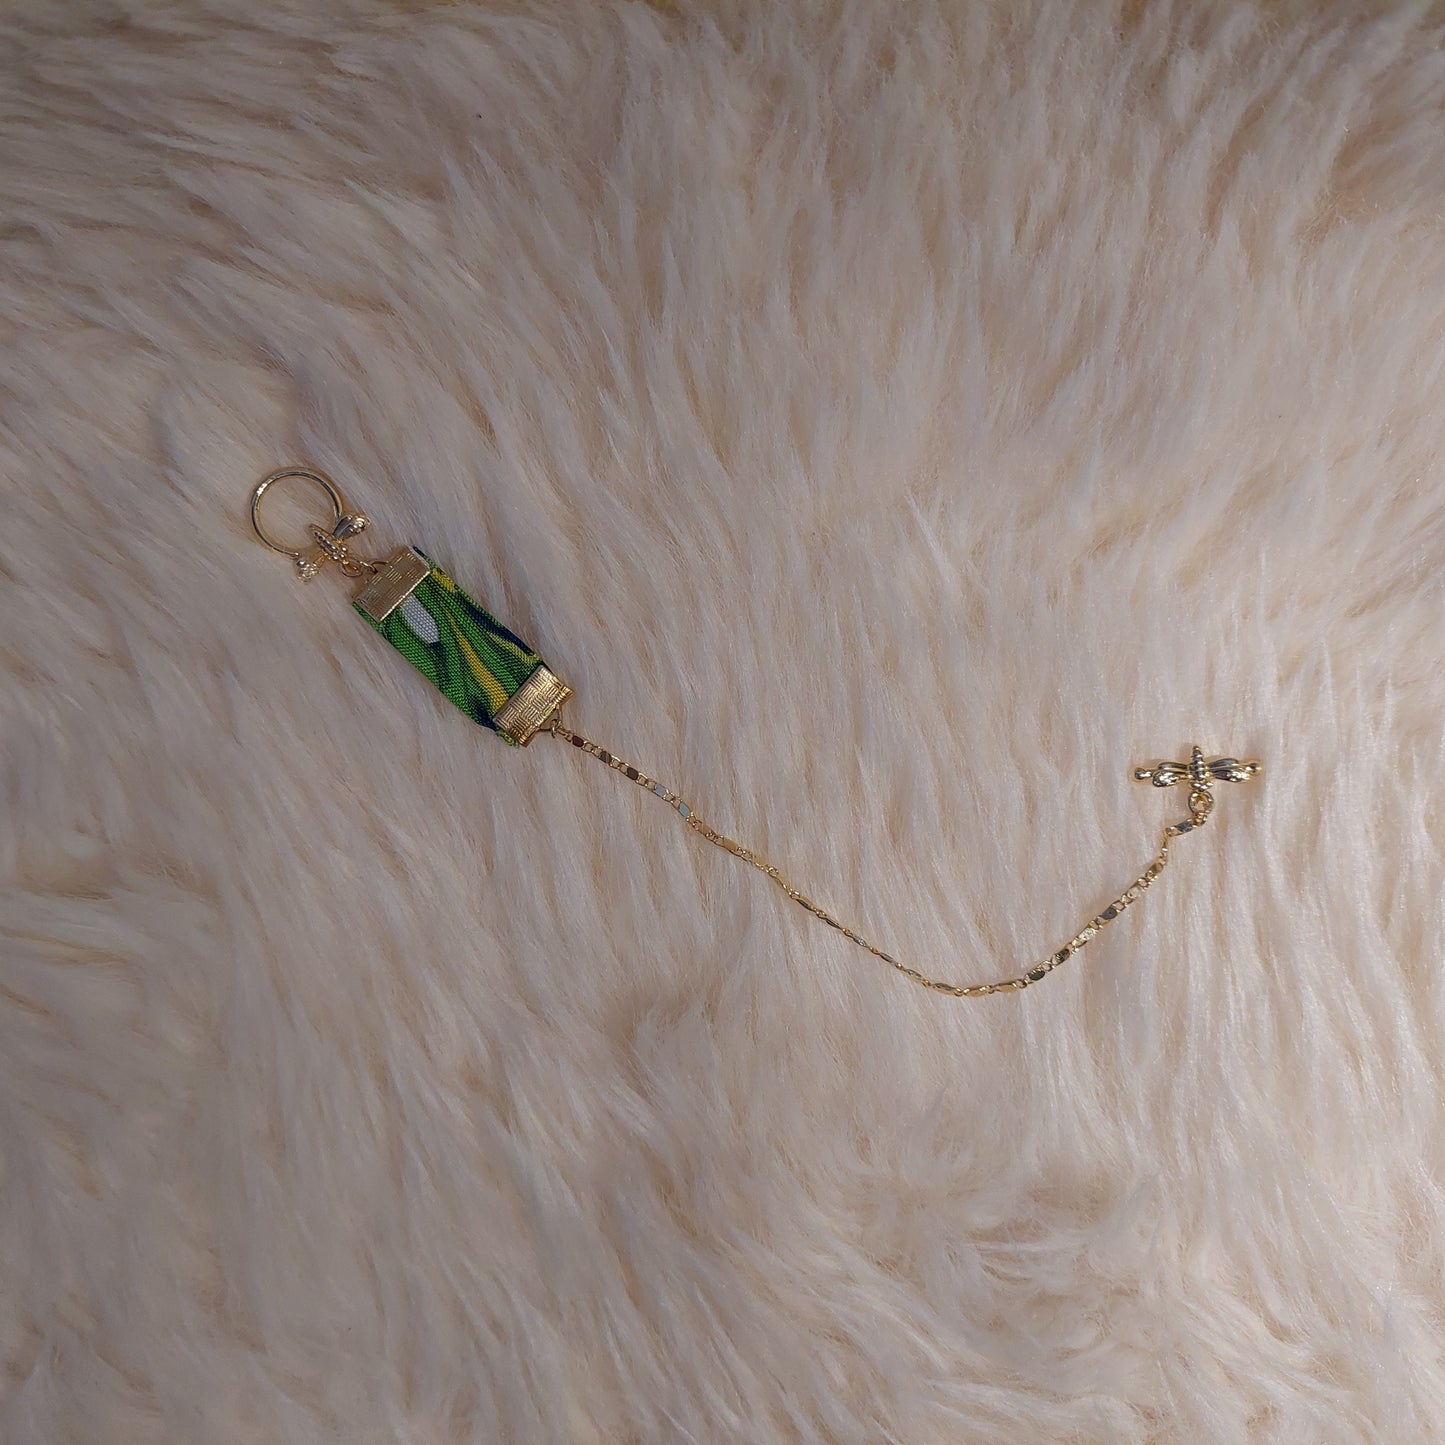 Libelle Medaille armband - groen/geel - " Blossem Garden "